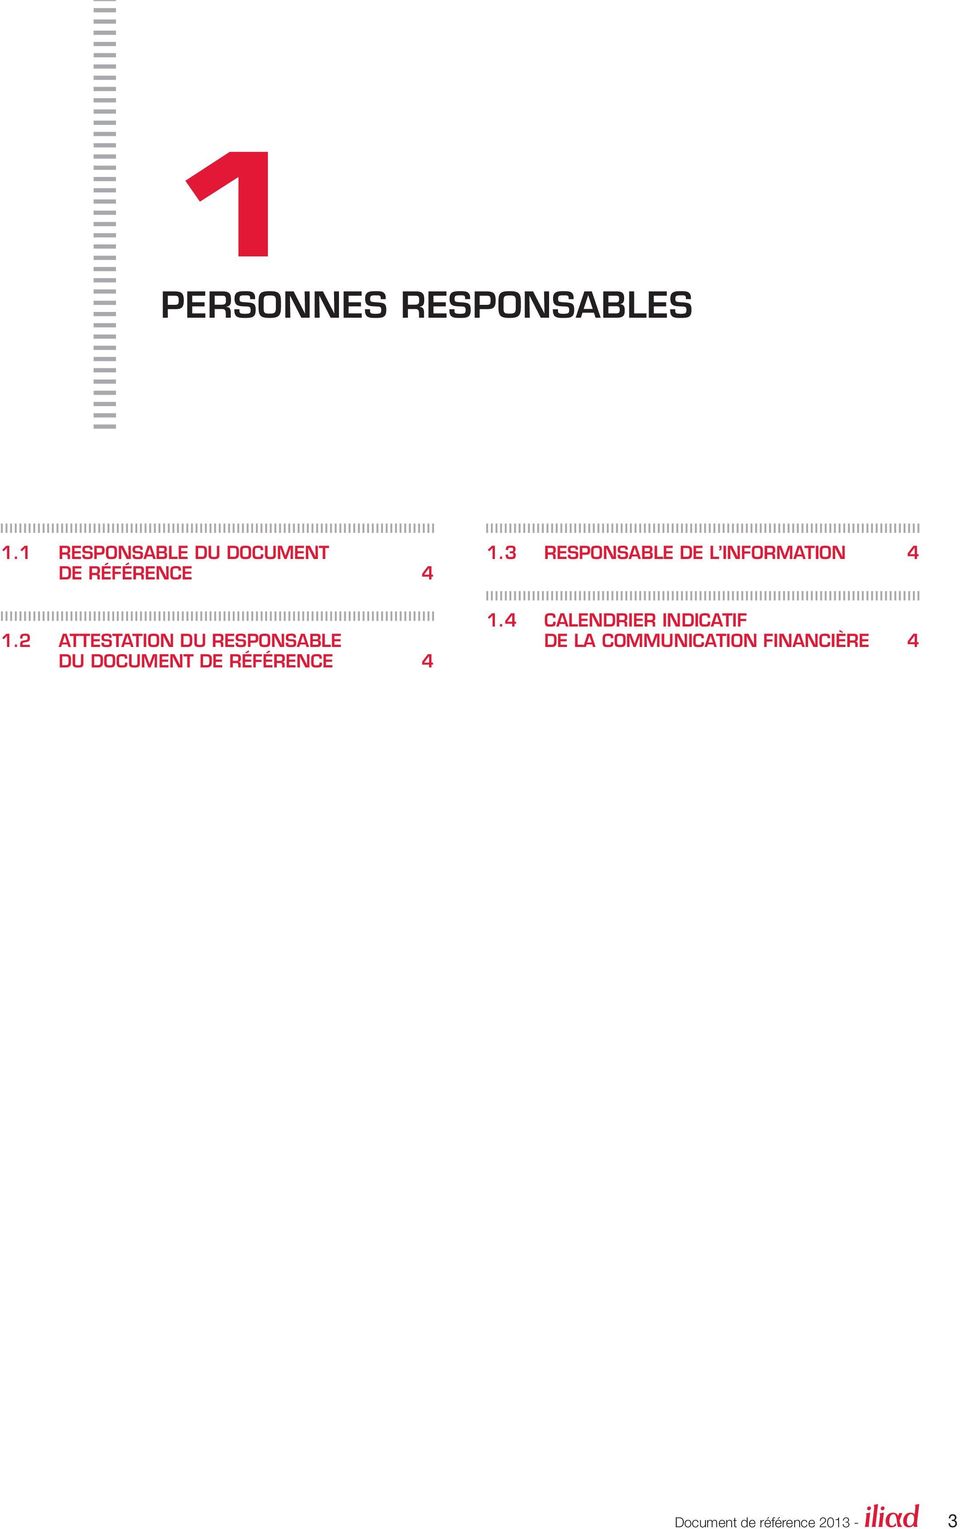 2 ATTESTATION DU RESPONSABLE DU DOCUMENT DE RÉFÉRENCE 4 1.